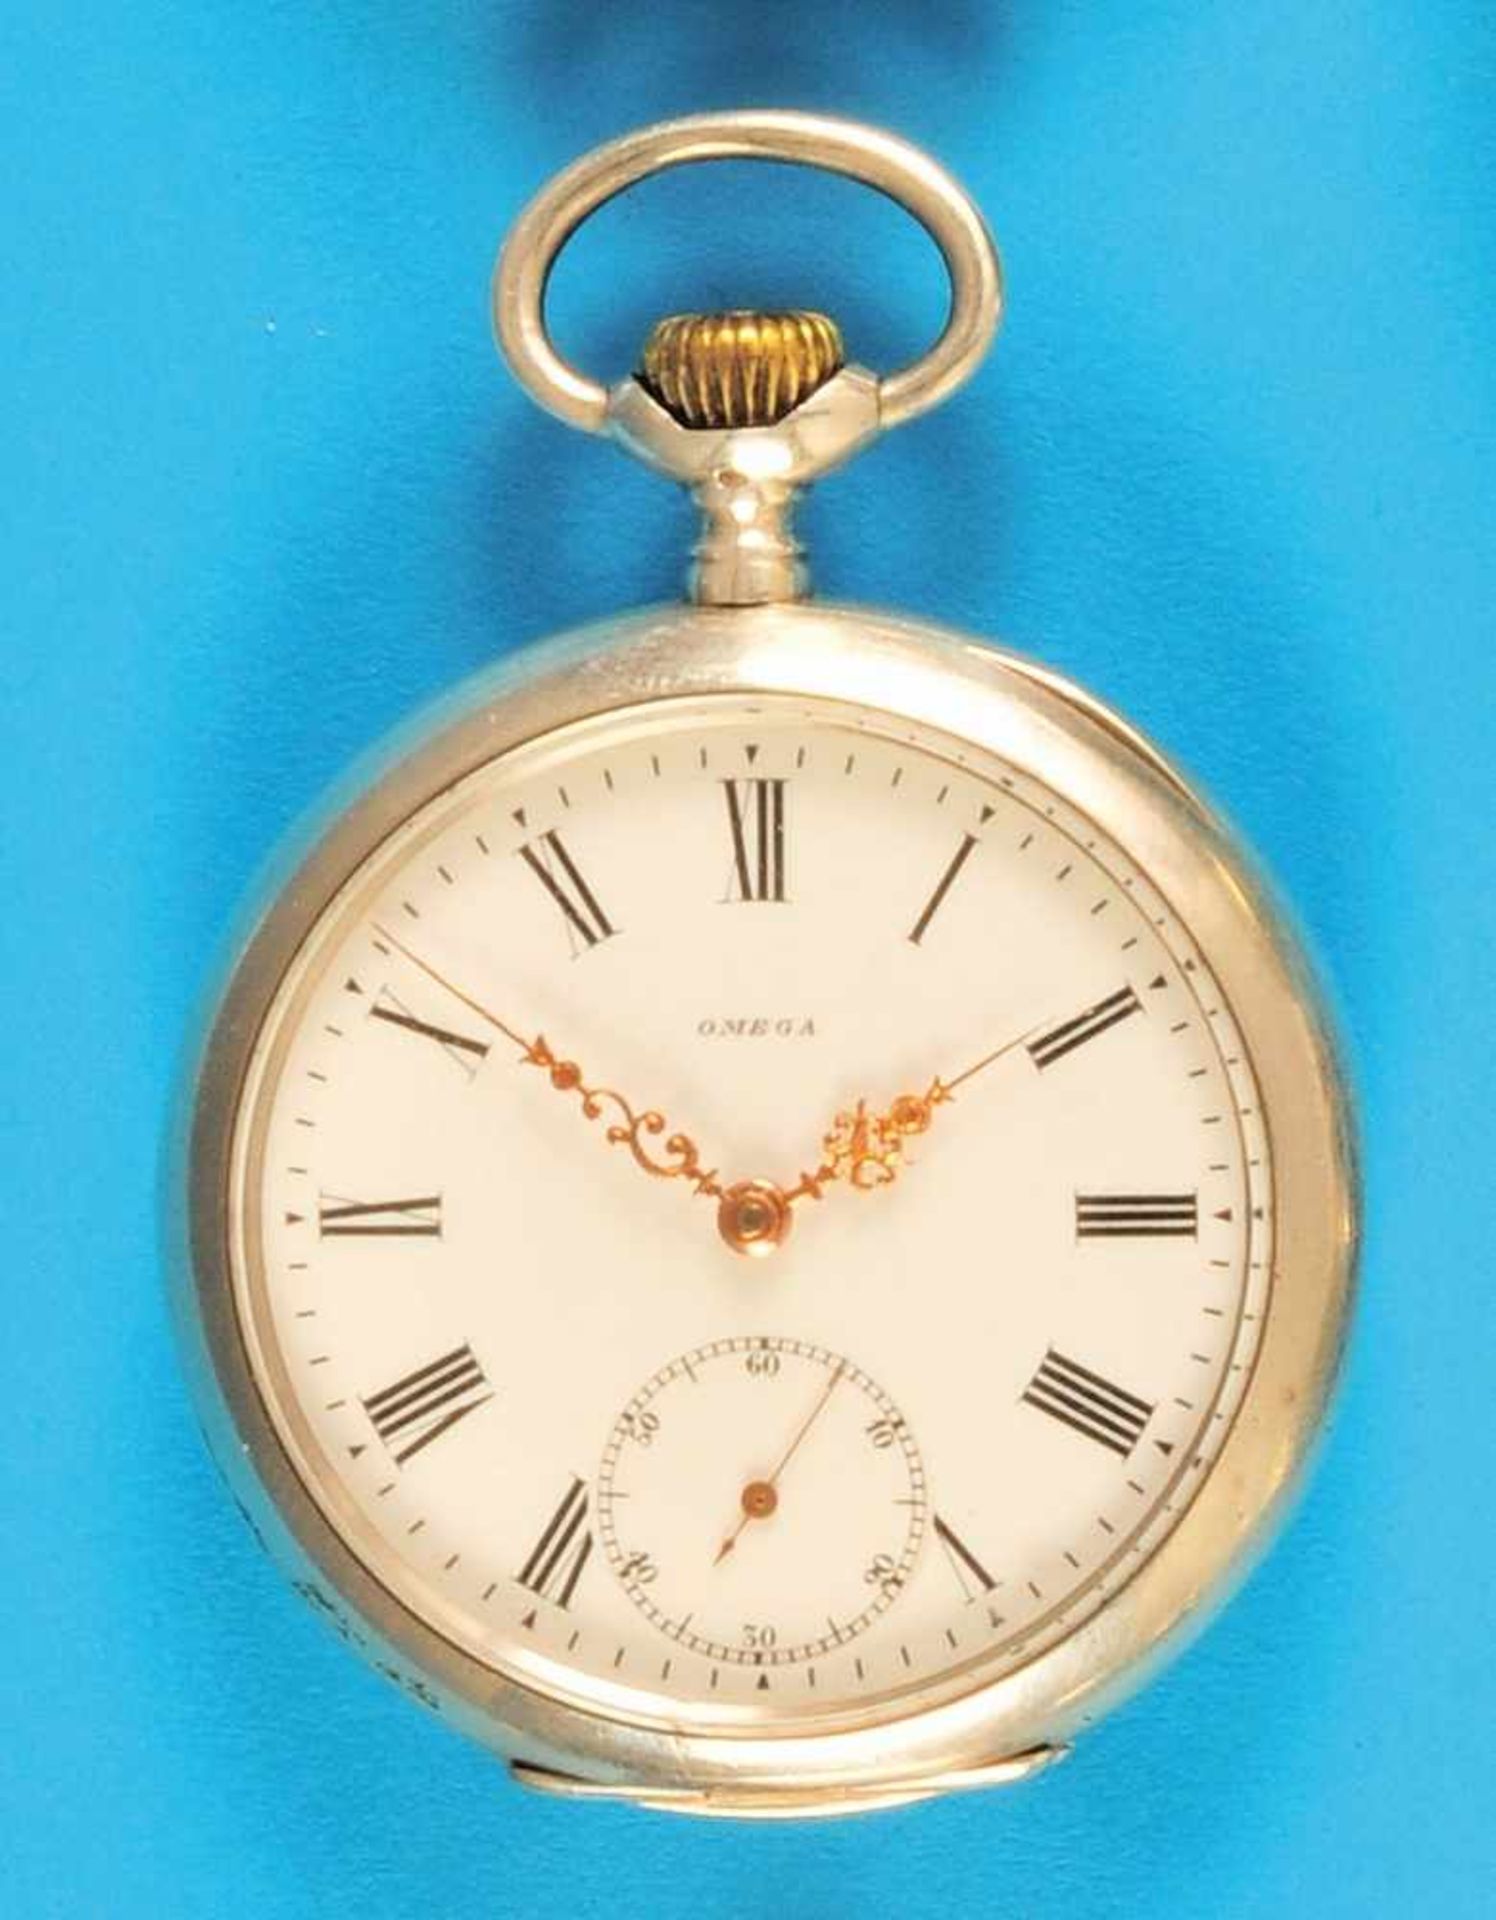 Omega silver pocket watchOmega Silbertaschenuhr, glattes Gehäuse, Emailzifferblatt mit römischen